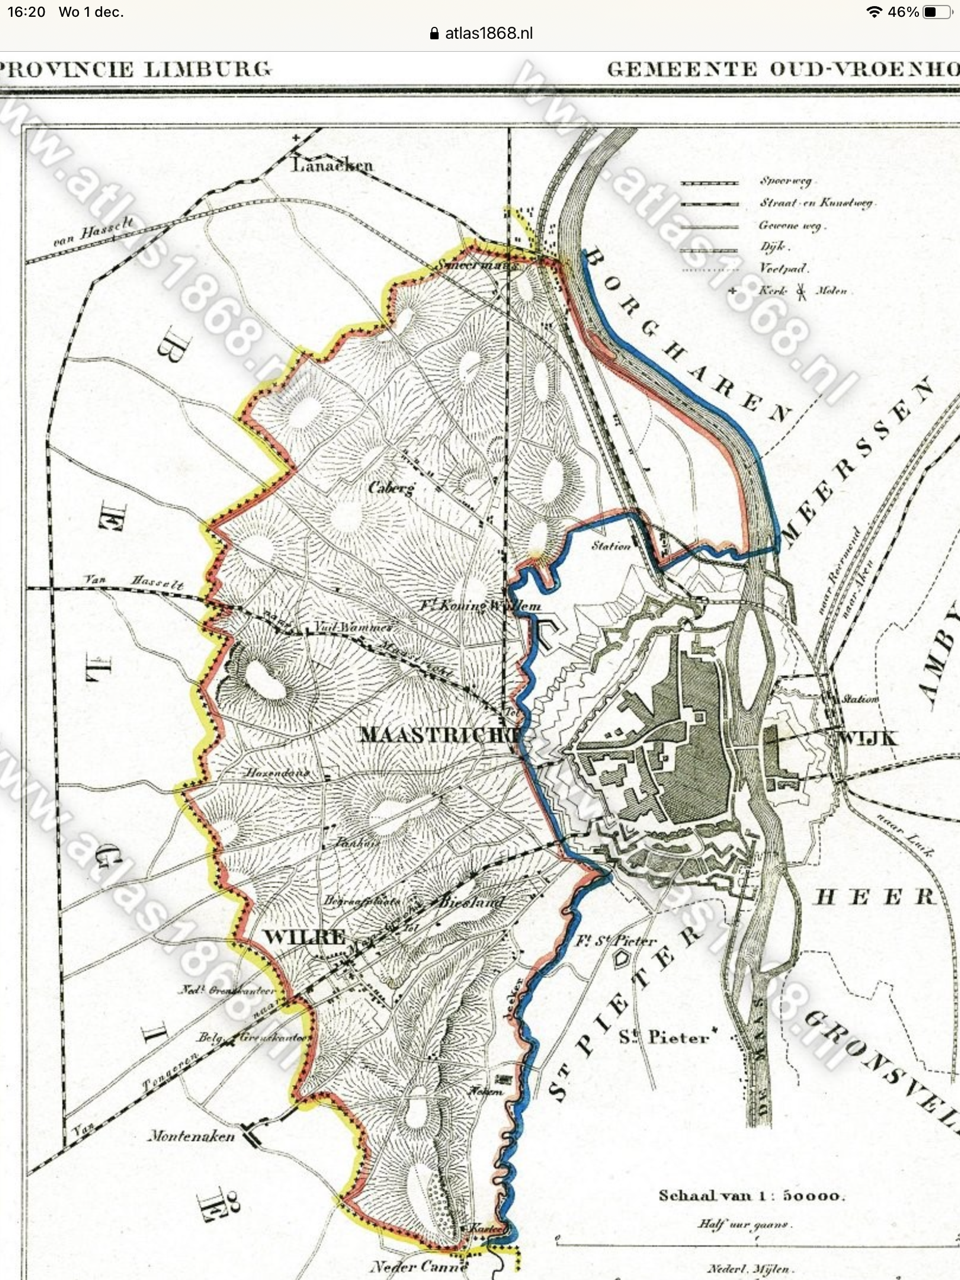 Kaart van gemeente Oud Vroenhoven Gemeenteatlas Kuyper 1858